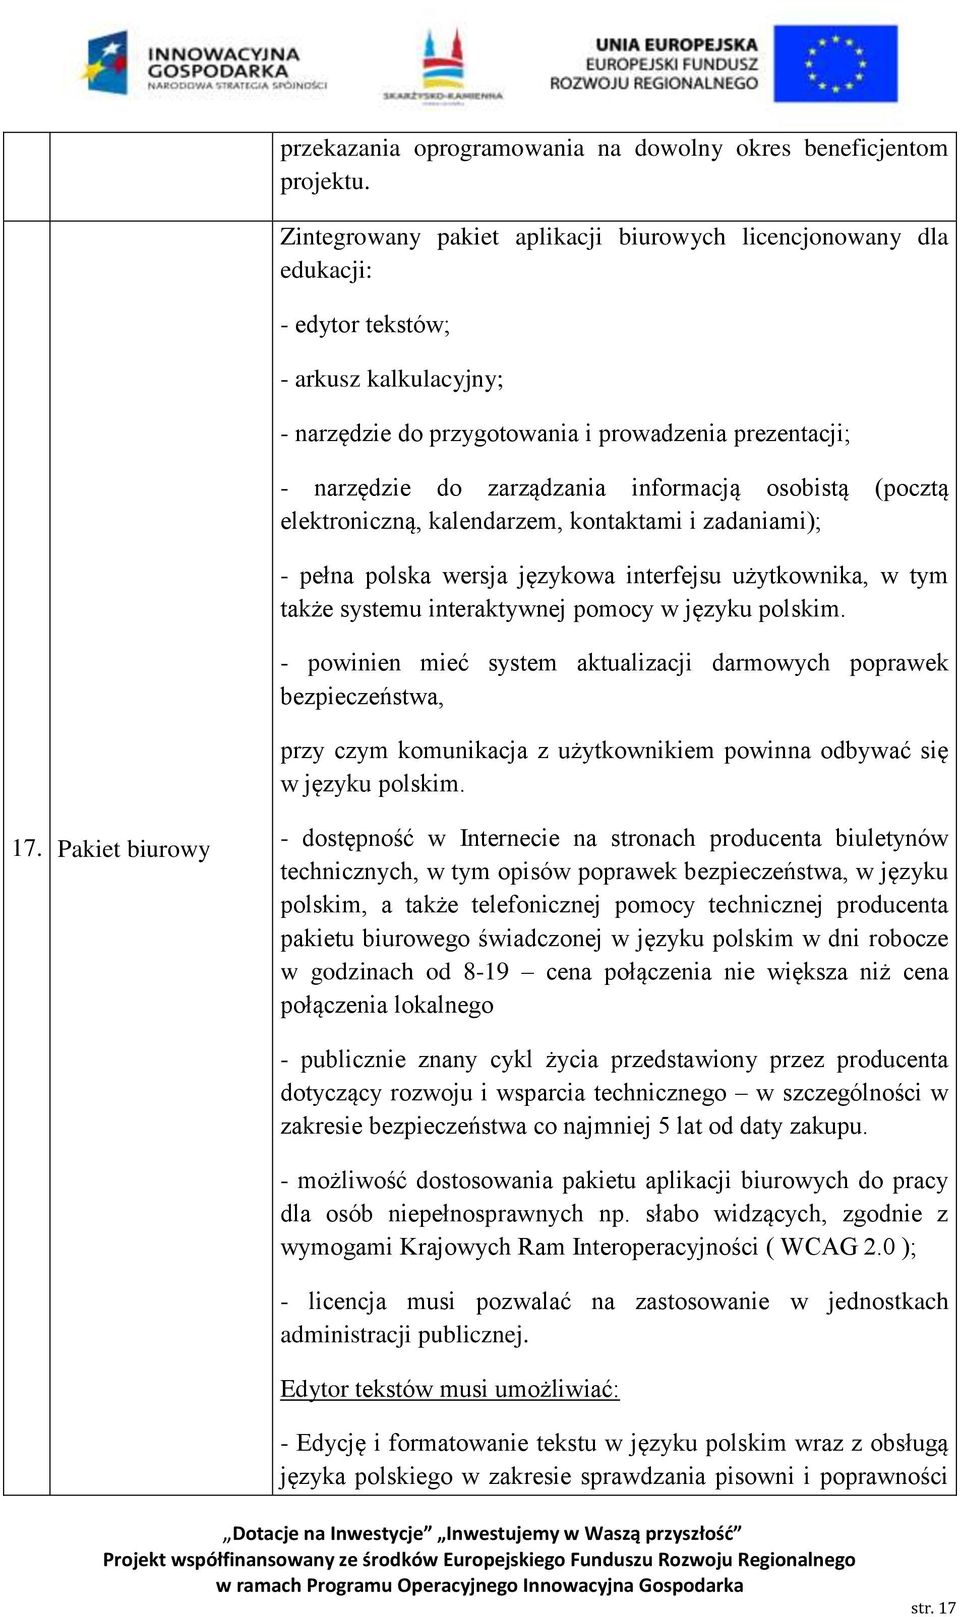 informacją osobistą (pocztą elektroniczną, kalendarzem, kontaktami i zadaniami); - pełna polska wersja językowa interfejsu użytkownika, w tym także systemu interaktywnej pomocy w języku polskim.